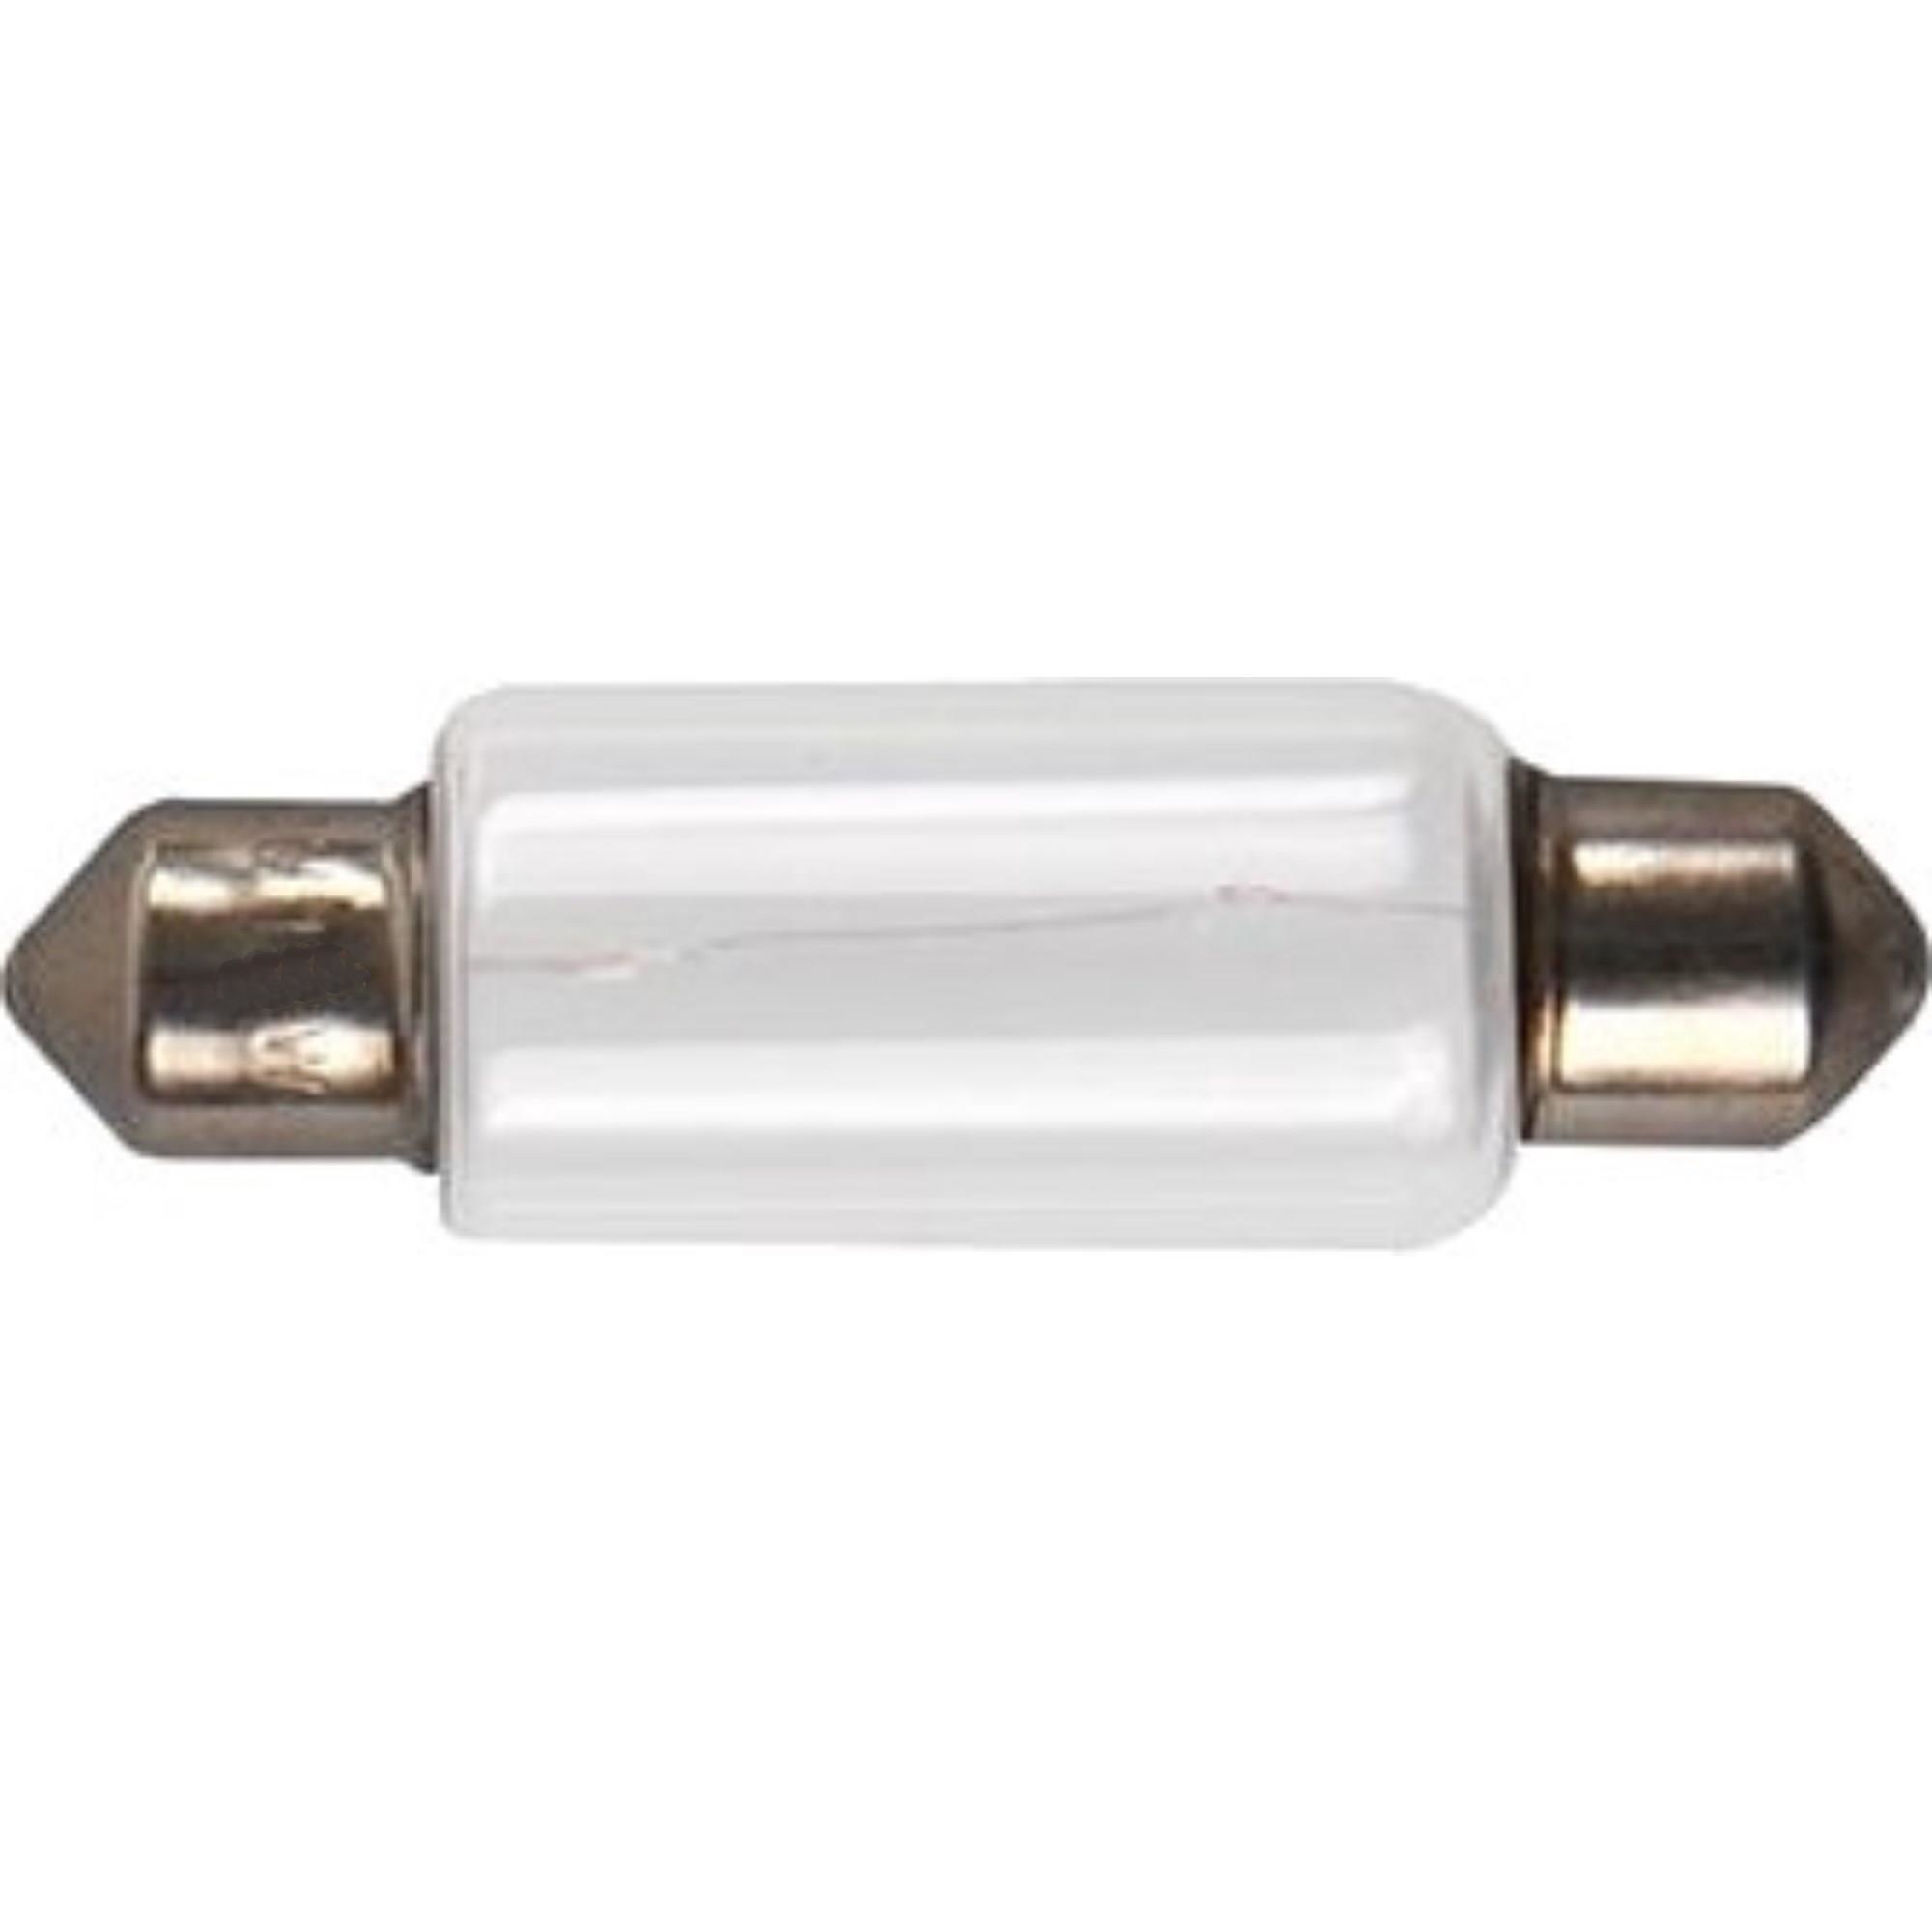 verkoper vocaal kroeg Pro Plus Autolamp Buislamp 12 Volt - 10 Watt. - SV8,5 15,5X43 - 2Cheap